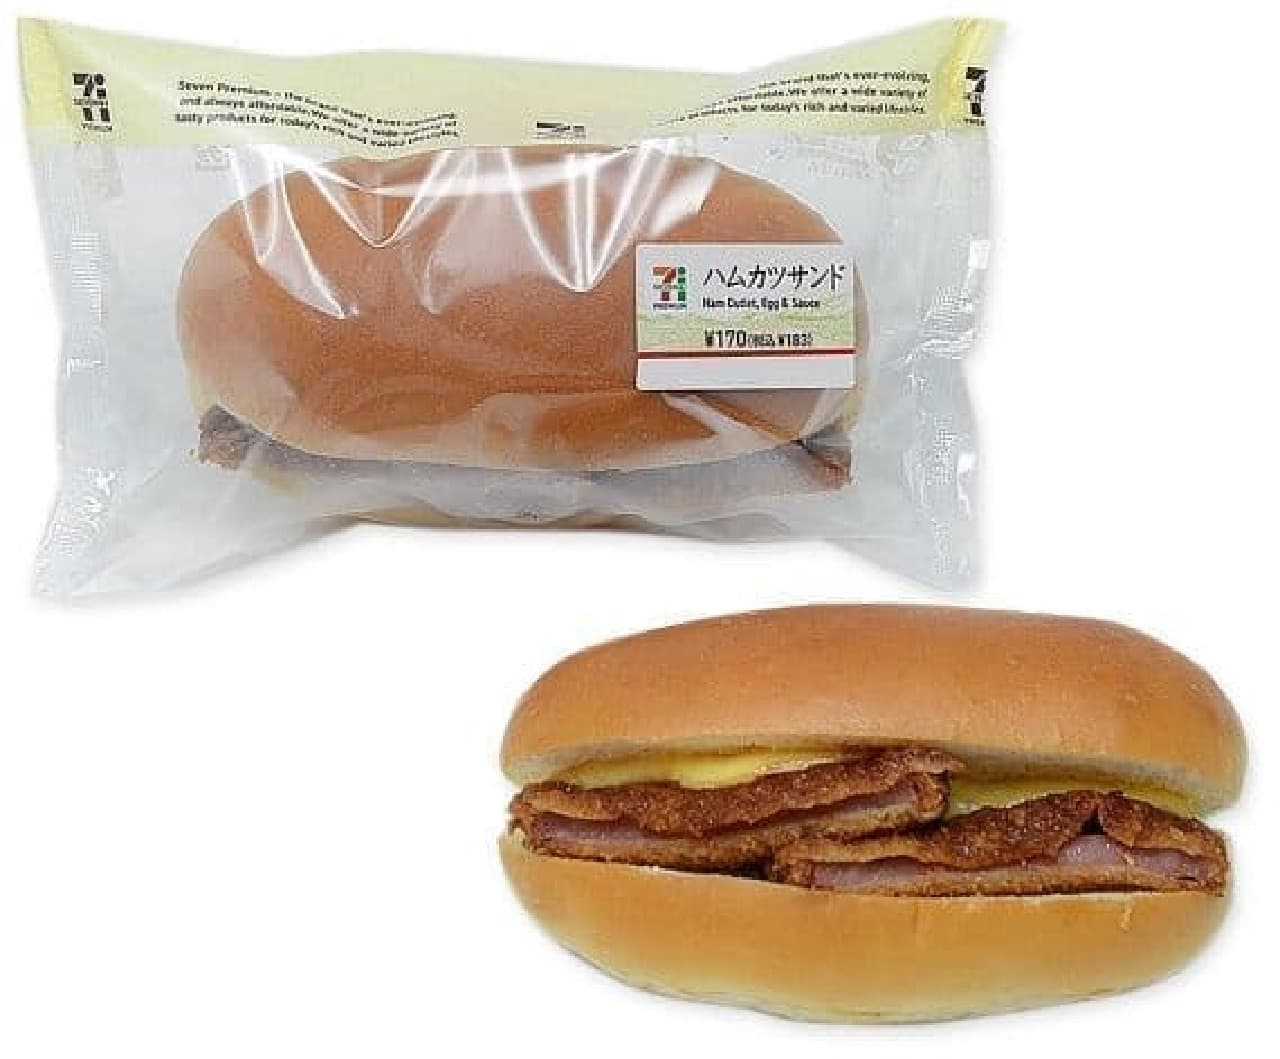 7-ELEVEN "Ham cutlet sandwich"